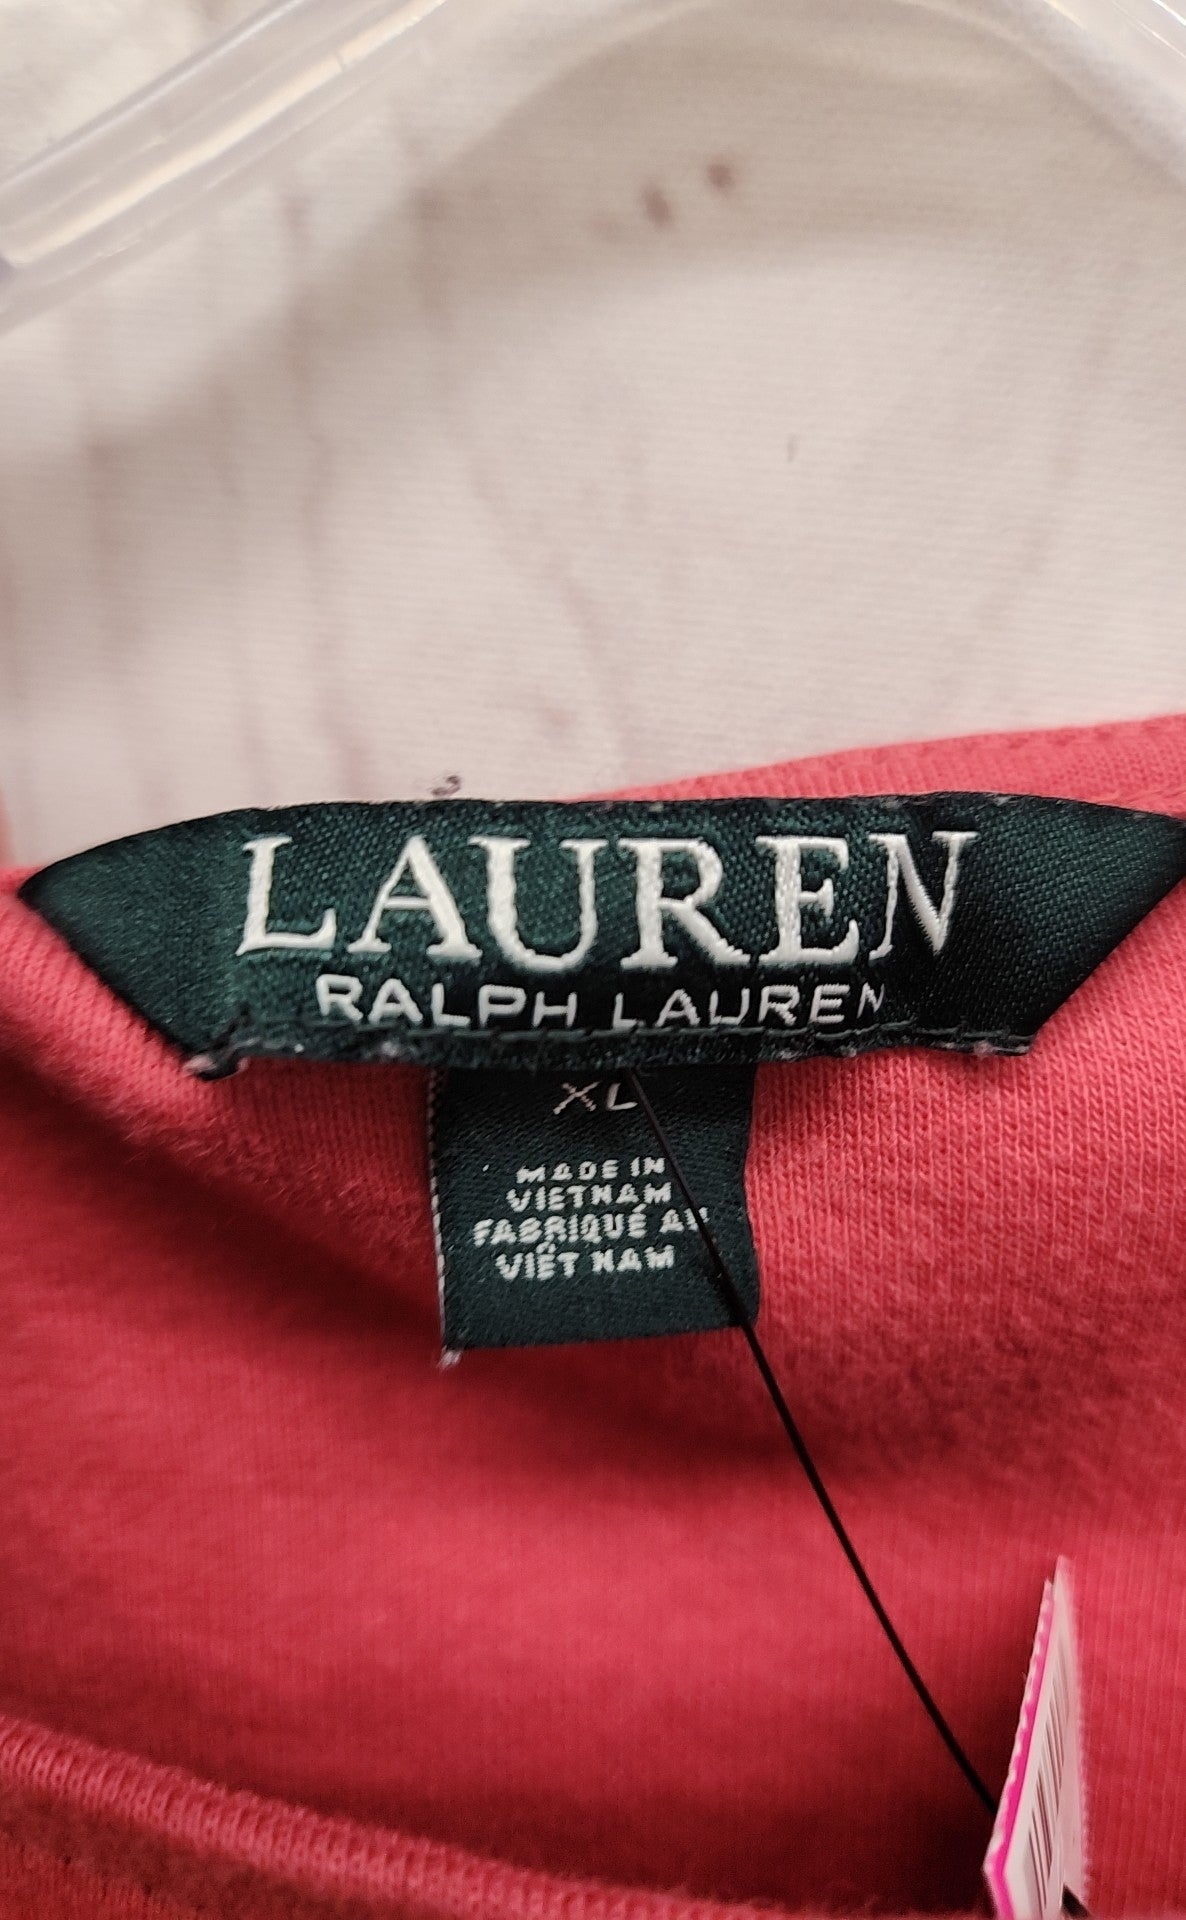 Lauren by Ralph Lauren Women's Size XL Pink 3/4 Sleeve Top